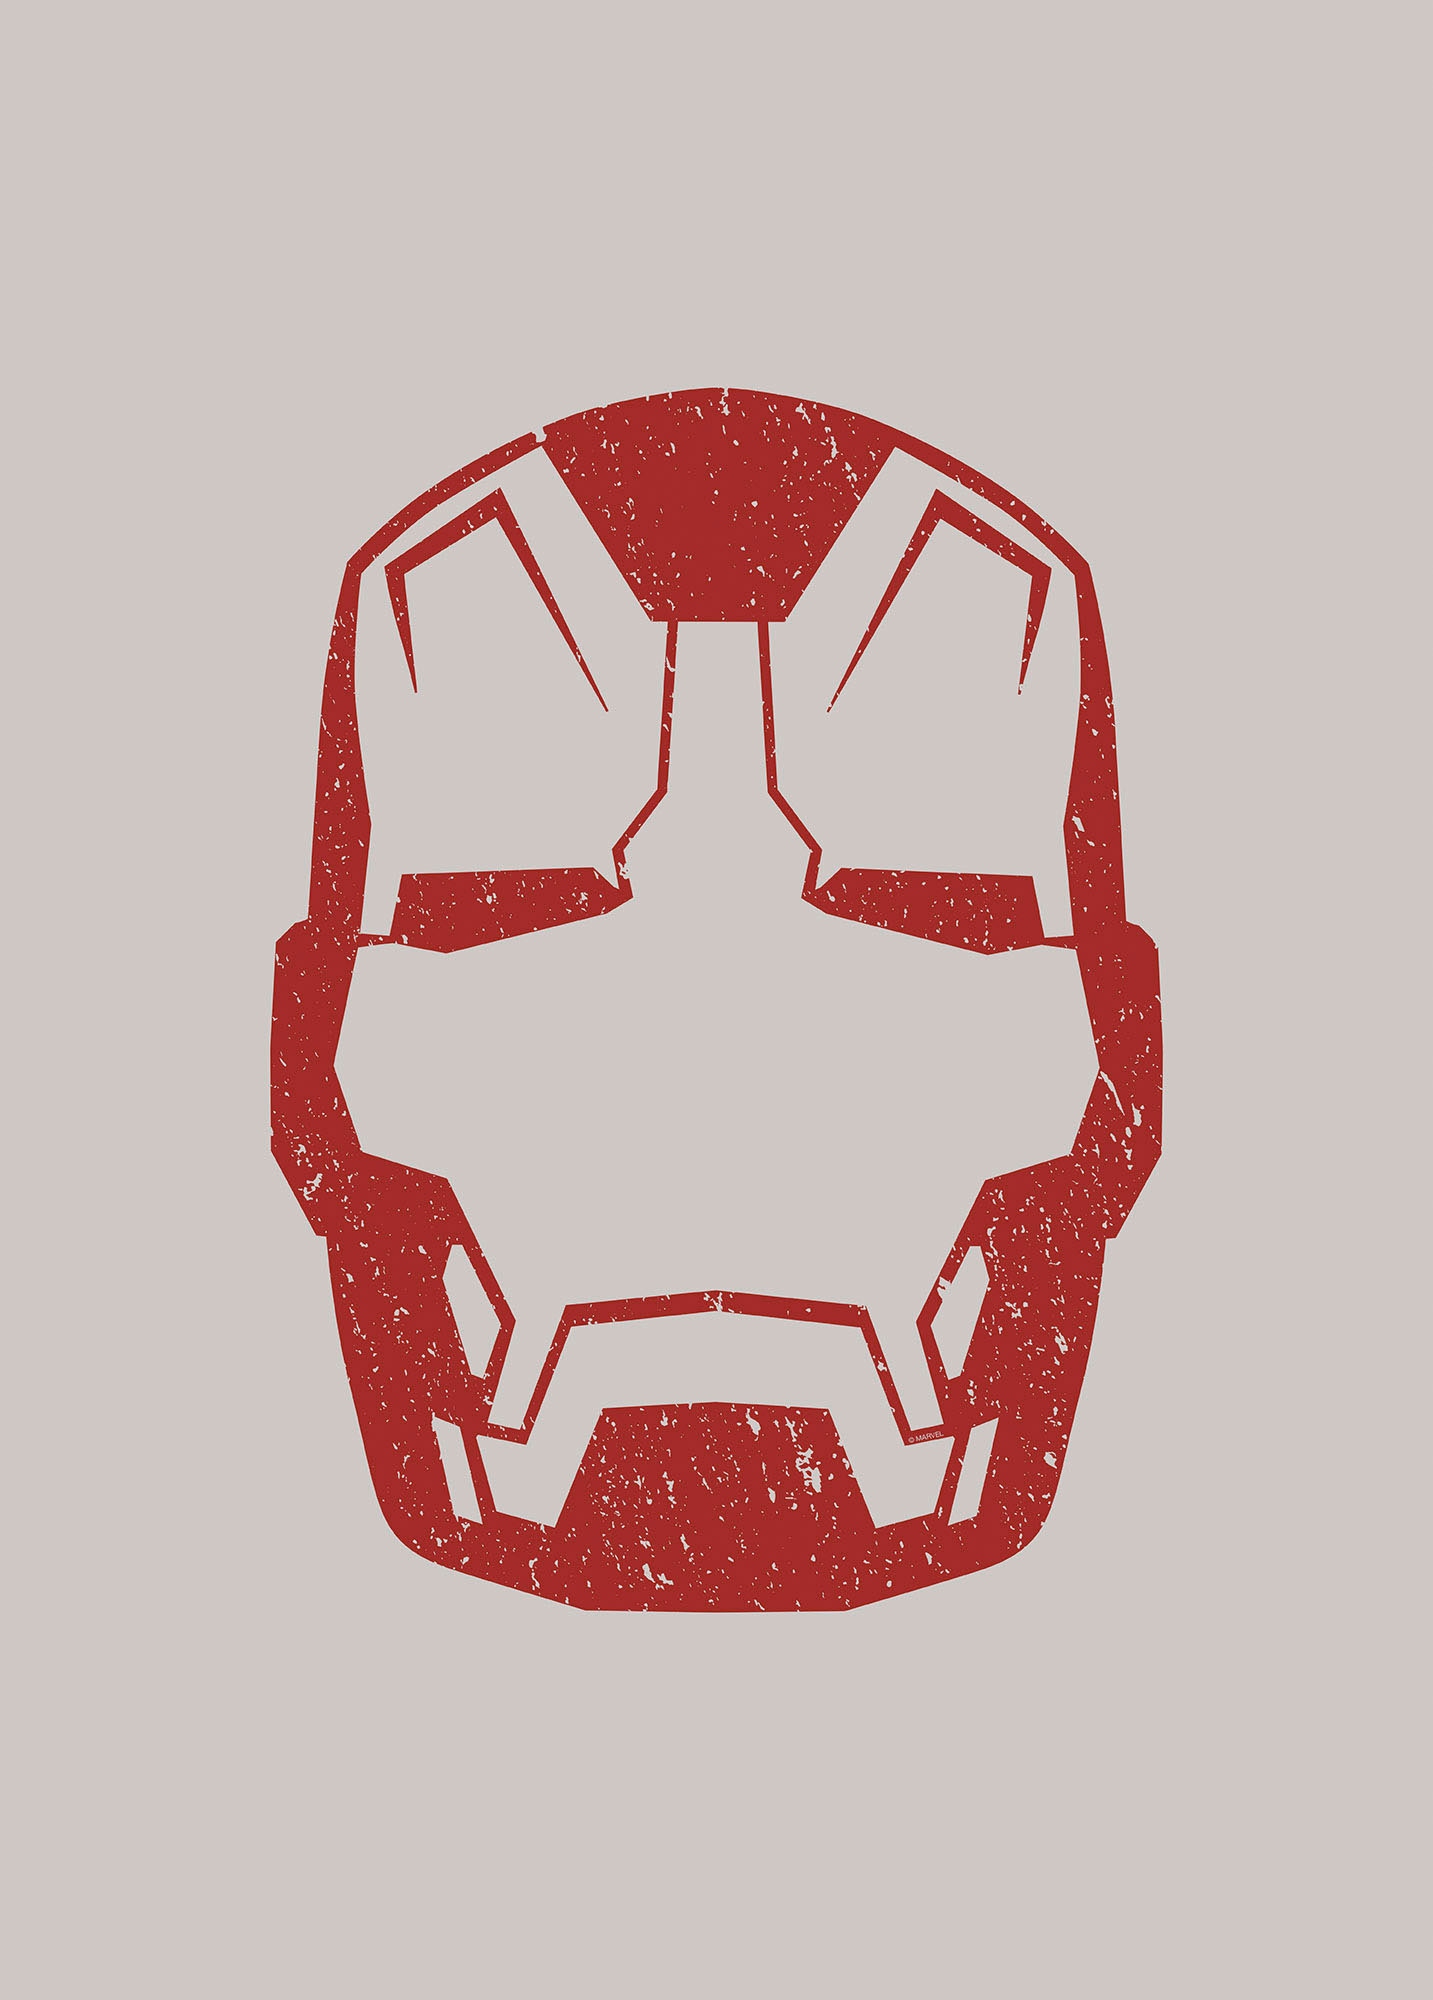 Komar Wandbild »Iron Man Helmet MK 43«, (1 St.), Deutsches Premium-Poster Fotopapier mit seidenmatter Oberfläche und hoher Lichtbeständigkeit. Für fotorealistische Drucke mit gestochen scharfen Details und hervorragender Farbbrillanz. von Komar